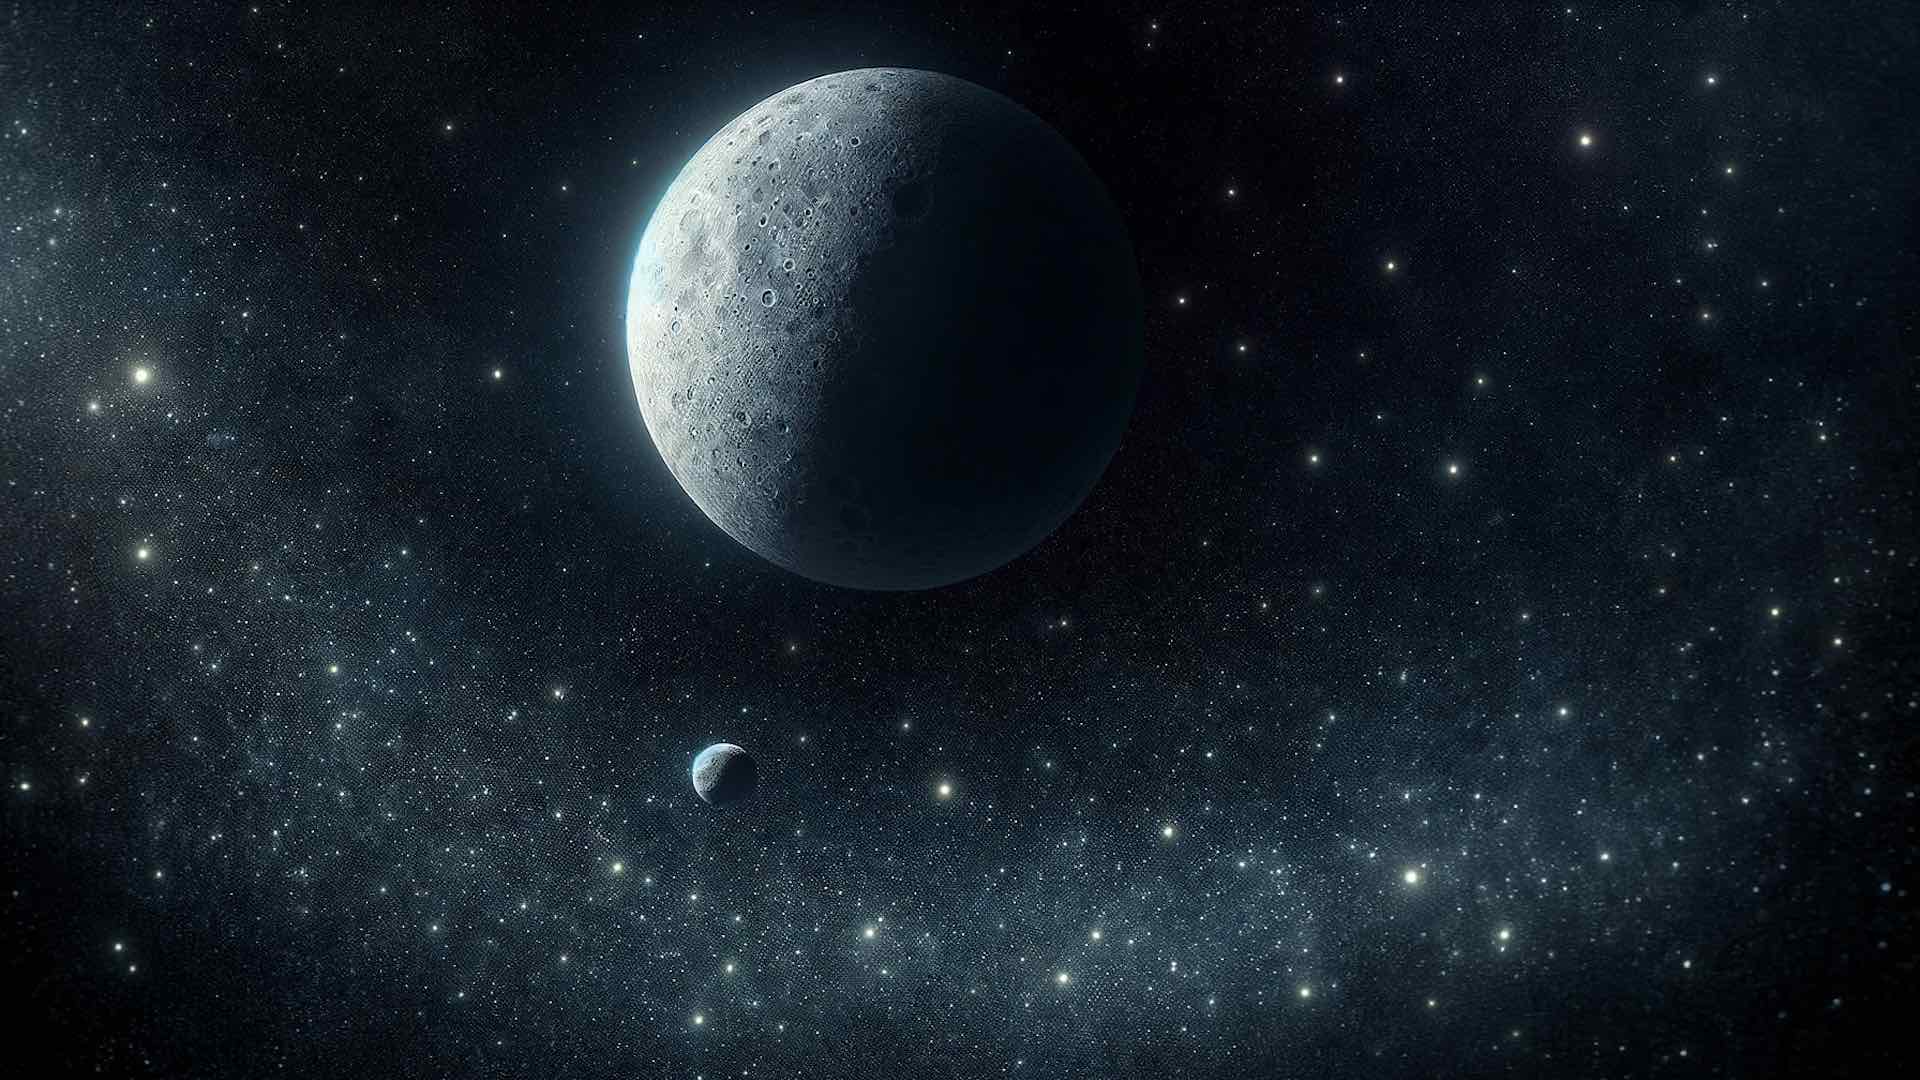 नासा के लुसी अंतरिक्ष यान ने क्षुद्रग्रह दिनकिनेश की परिक्रमा कर रहे छोटे चंद्रमा का अनावरण किया